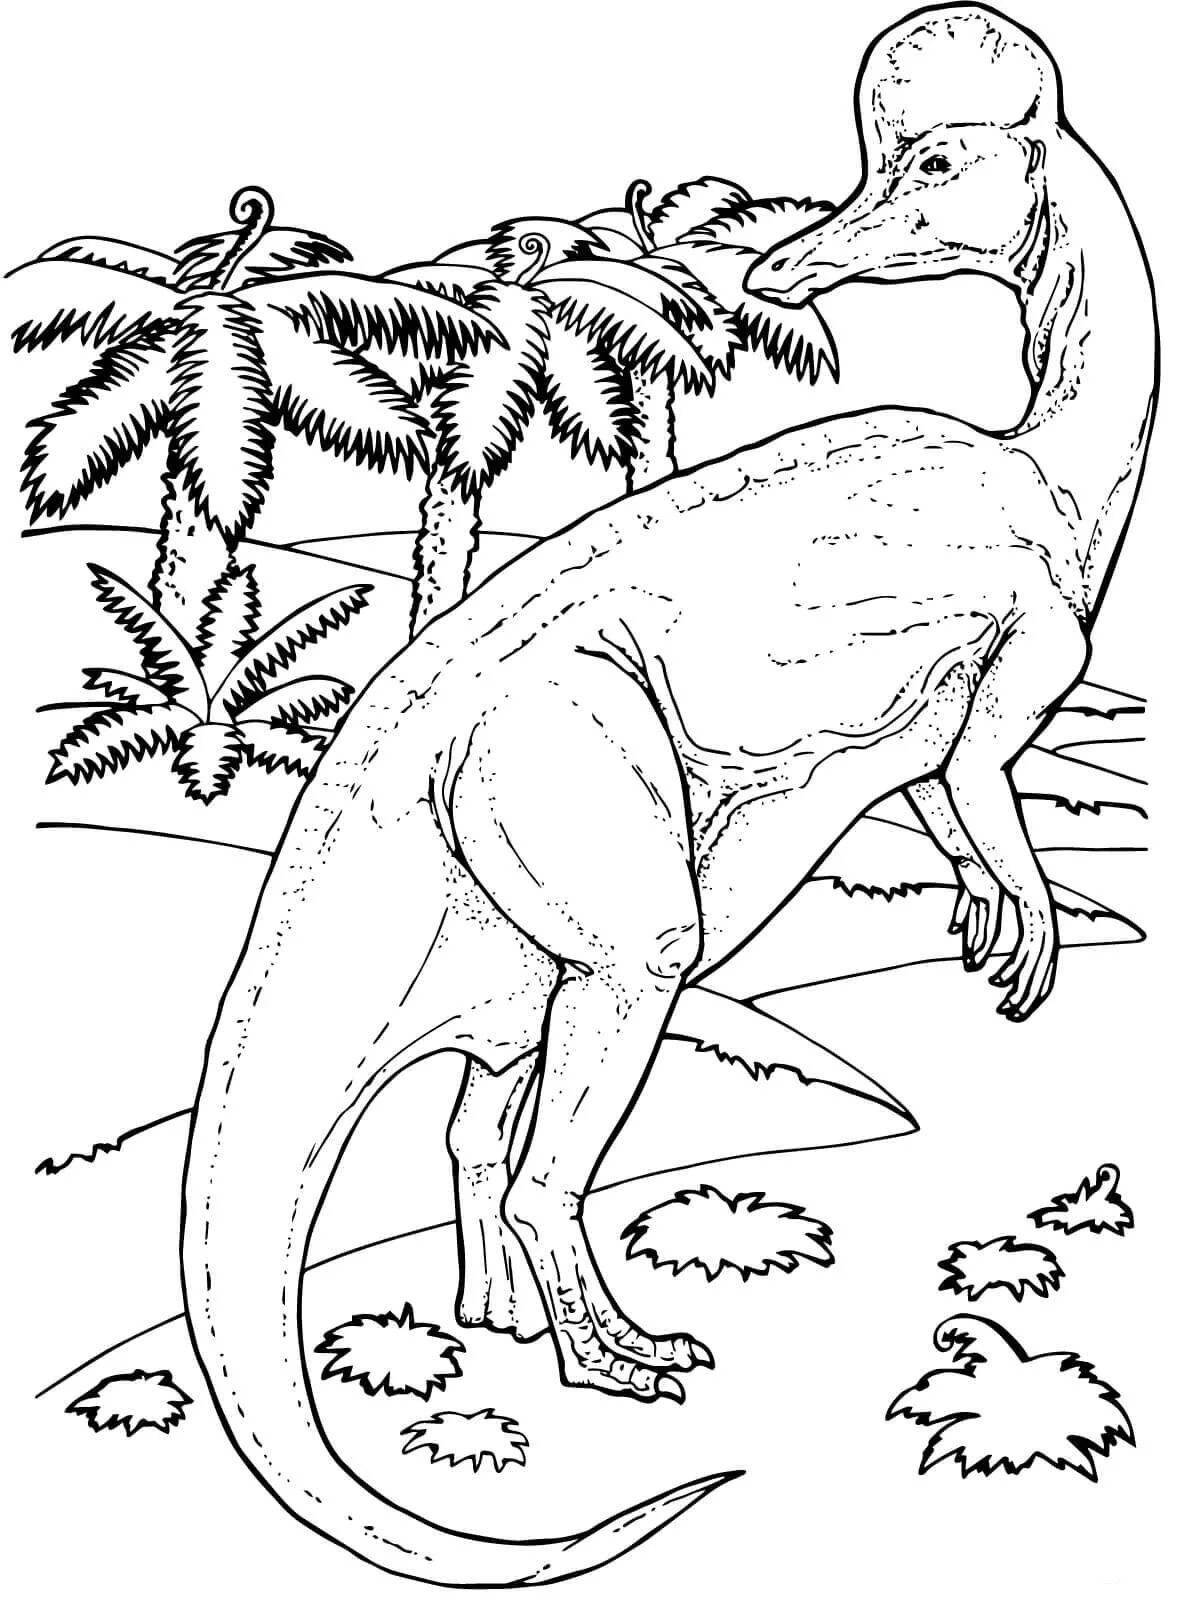 Роскошная раскраска большие динозавры